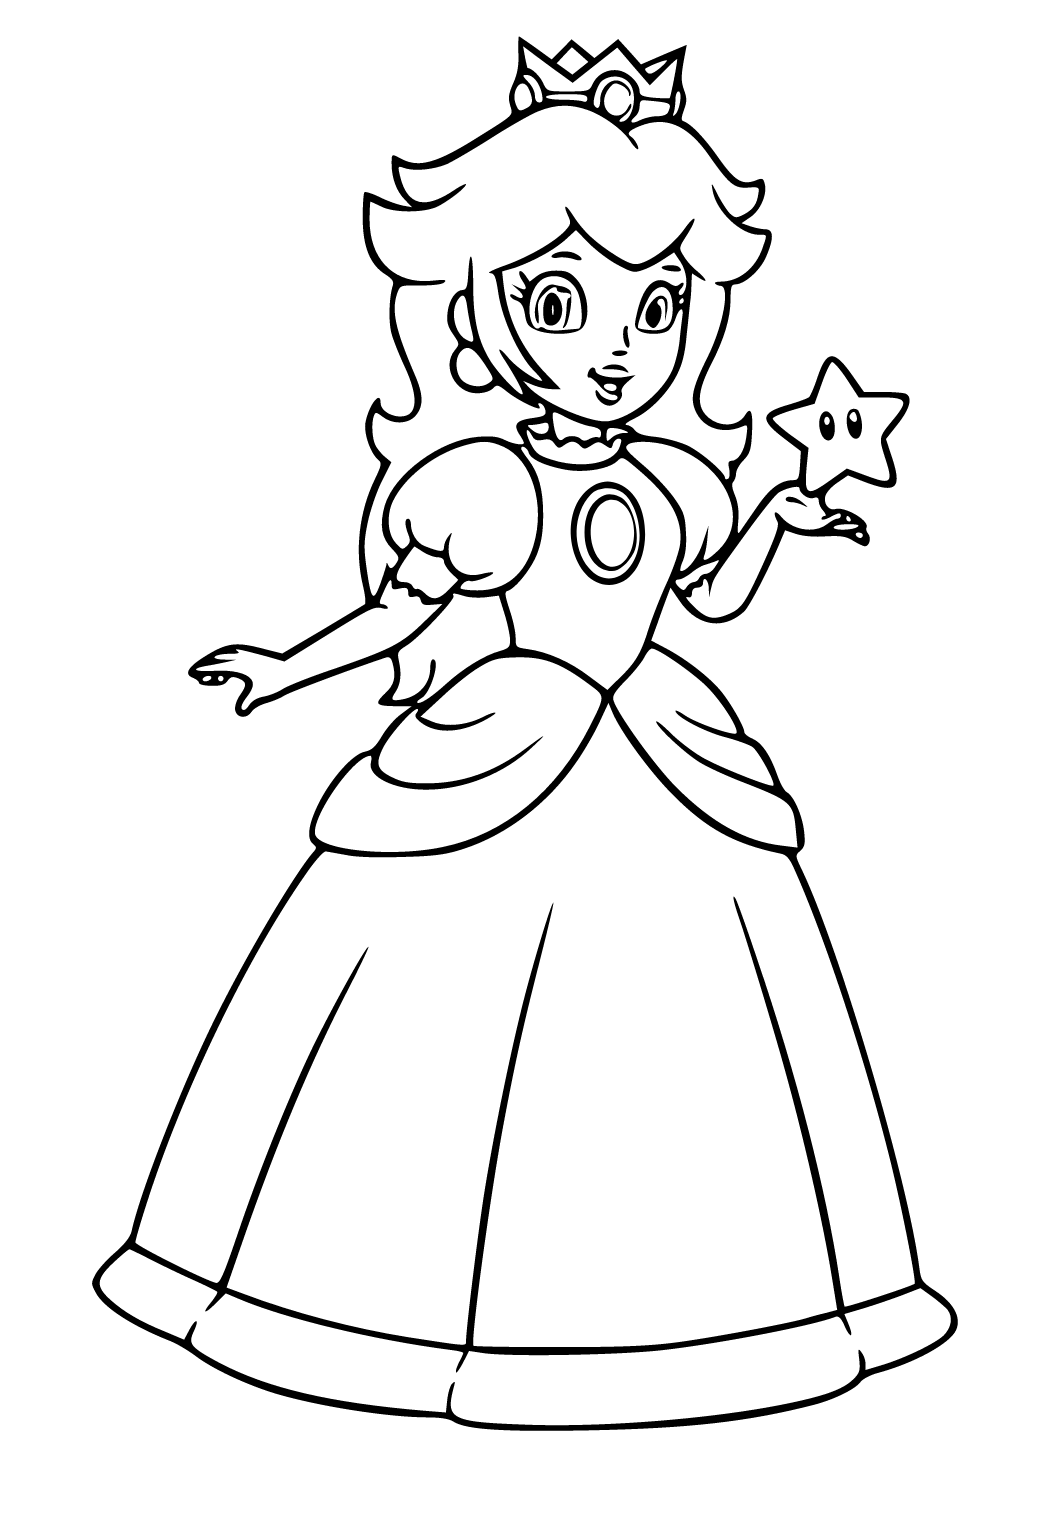 Desenhos para colorir da Princesa Peach para impressão e grátis